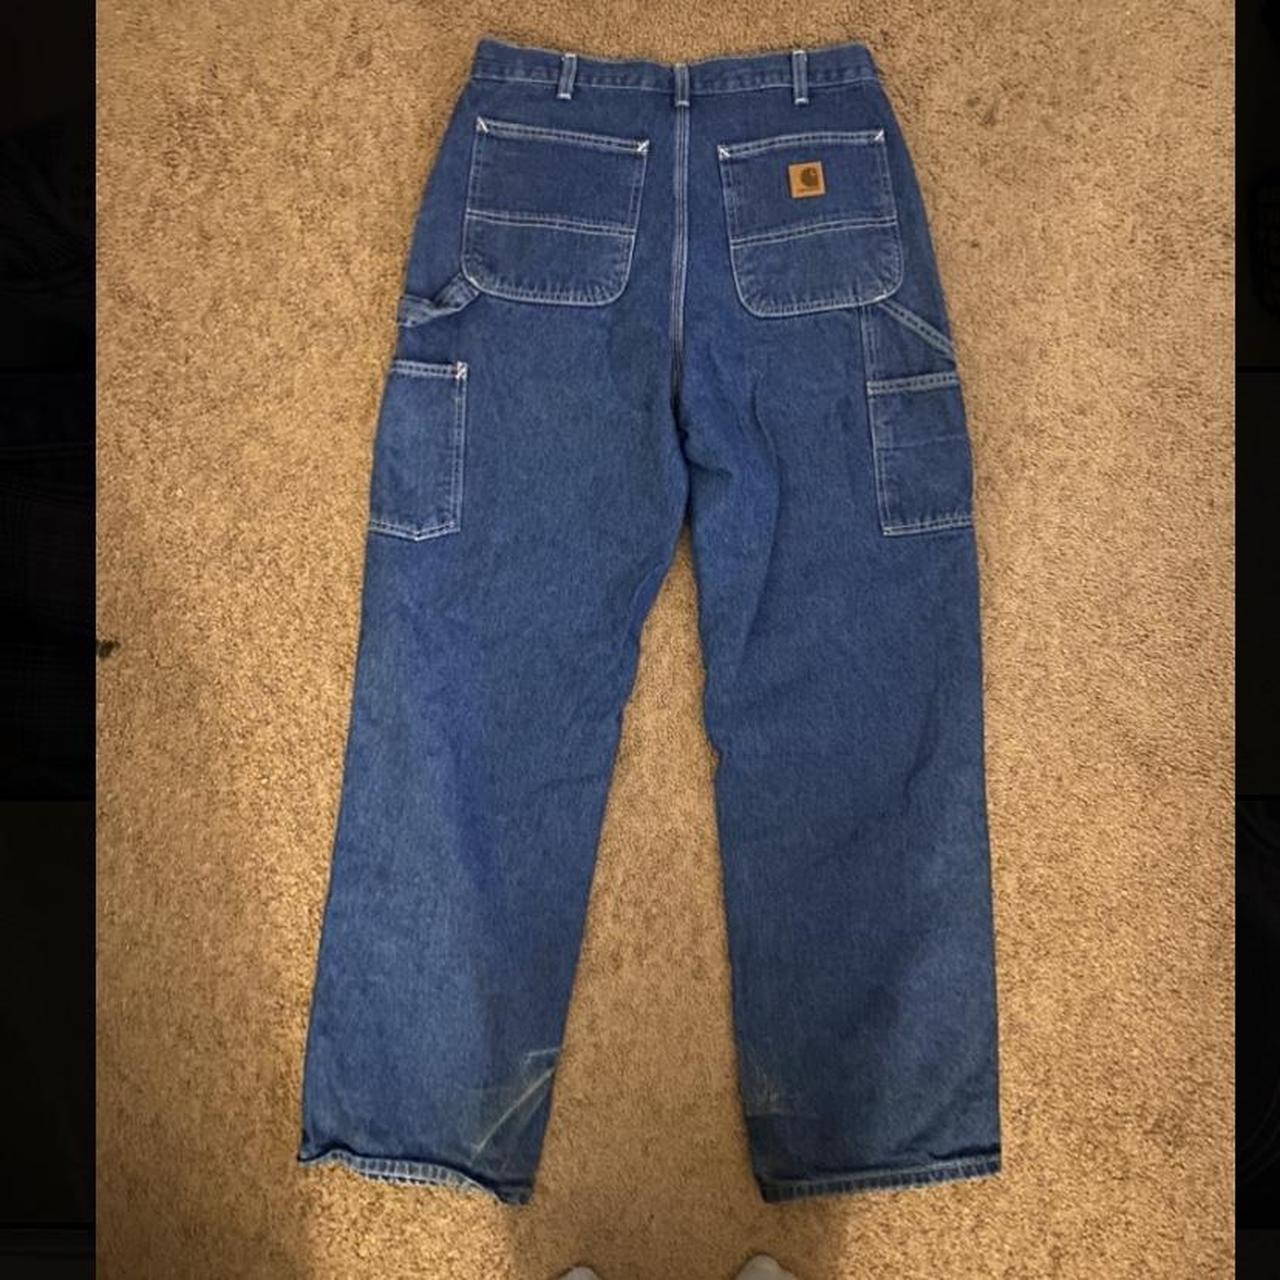 Vintage Carhartt Carpenter Jeans Size... - Depop